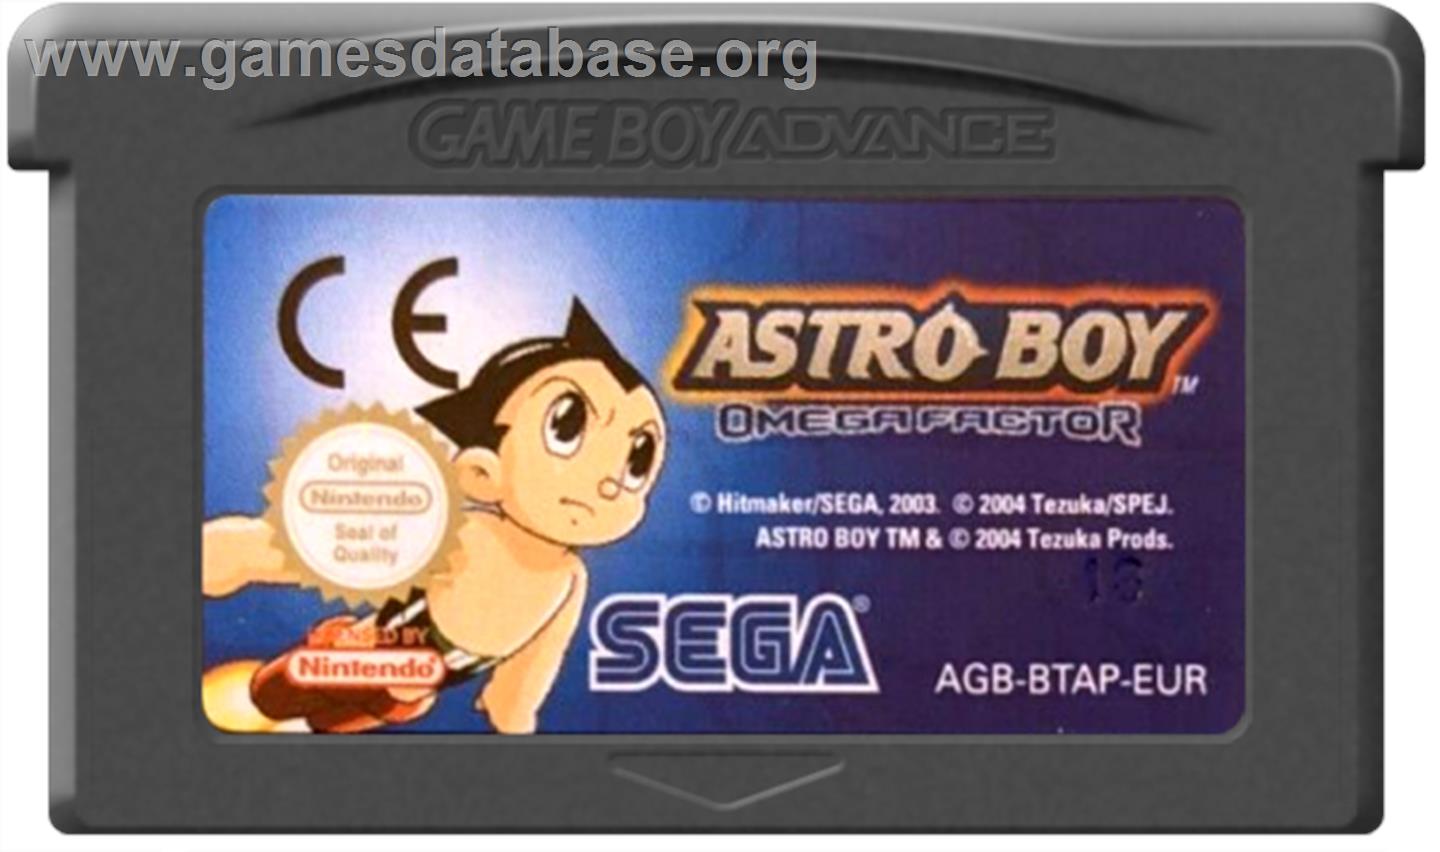 Astro Boy: Omega Factor - Nintendo Game Boy Advance - Artwork - Cartridge